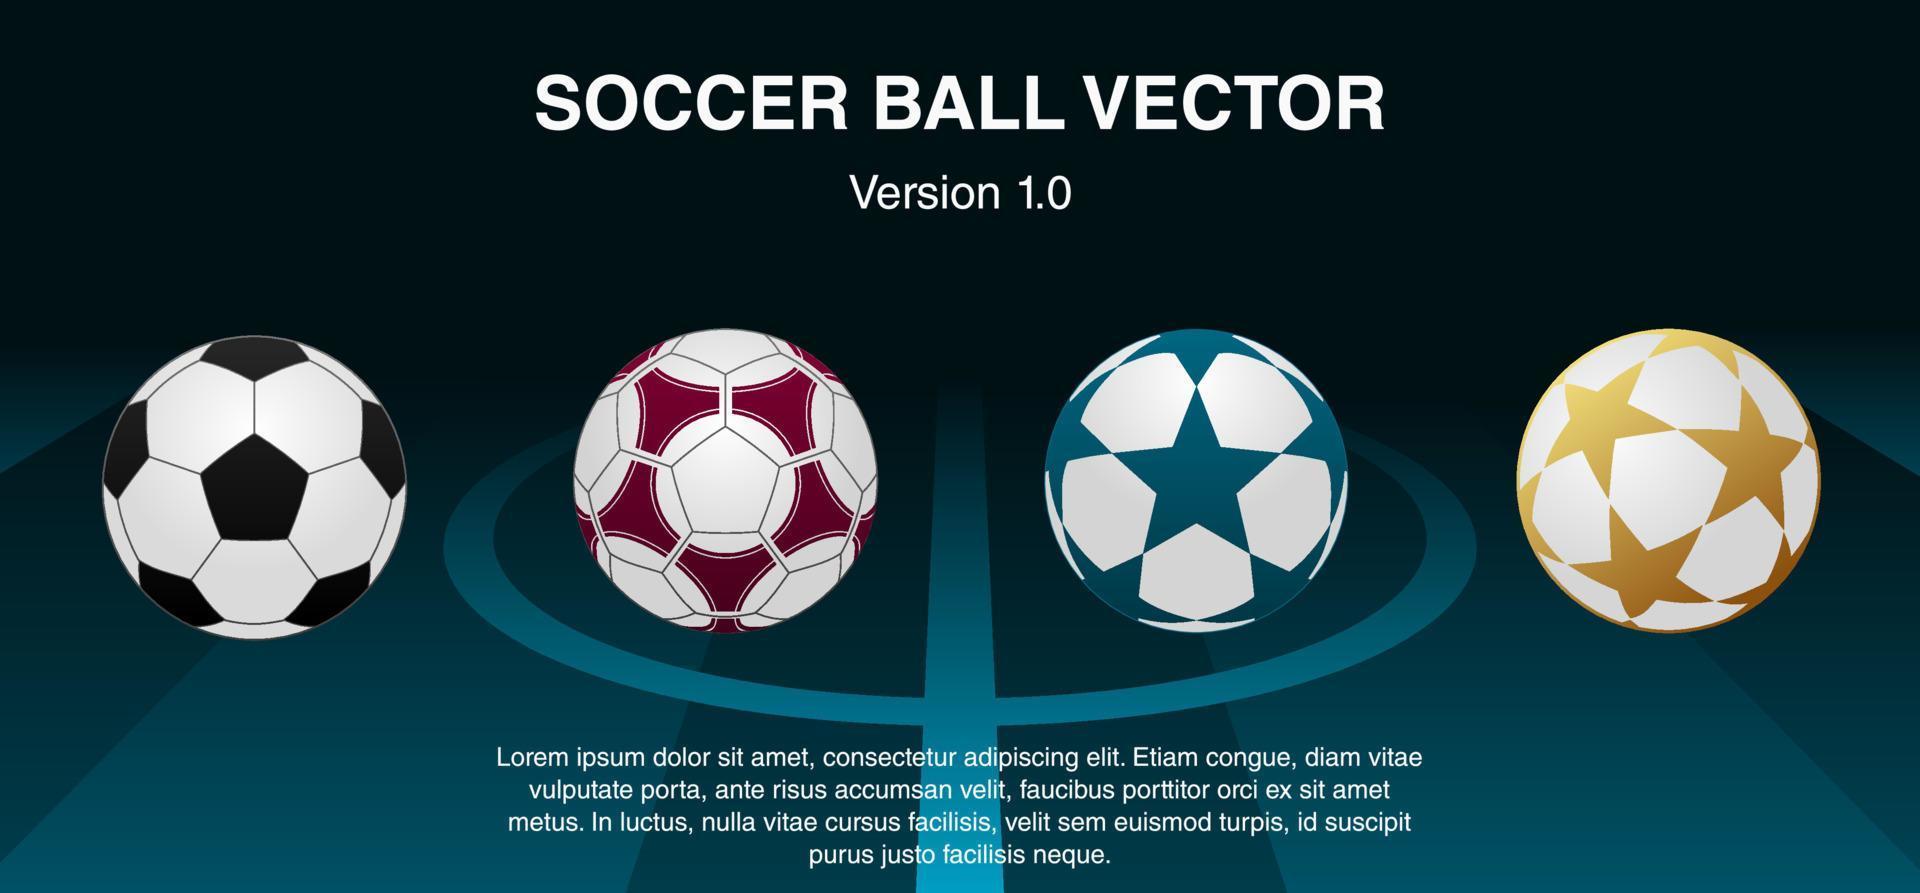 voetbal bal vector illustratie met verschillend patroon ontwerp